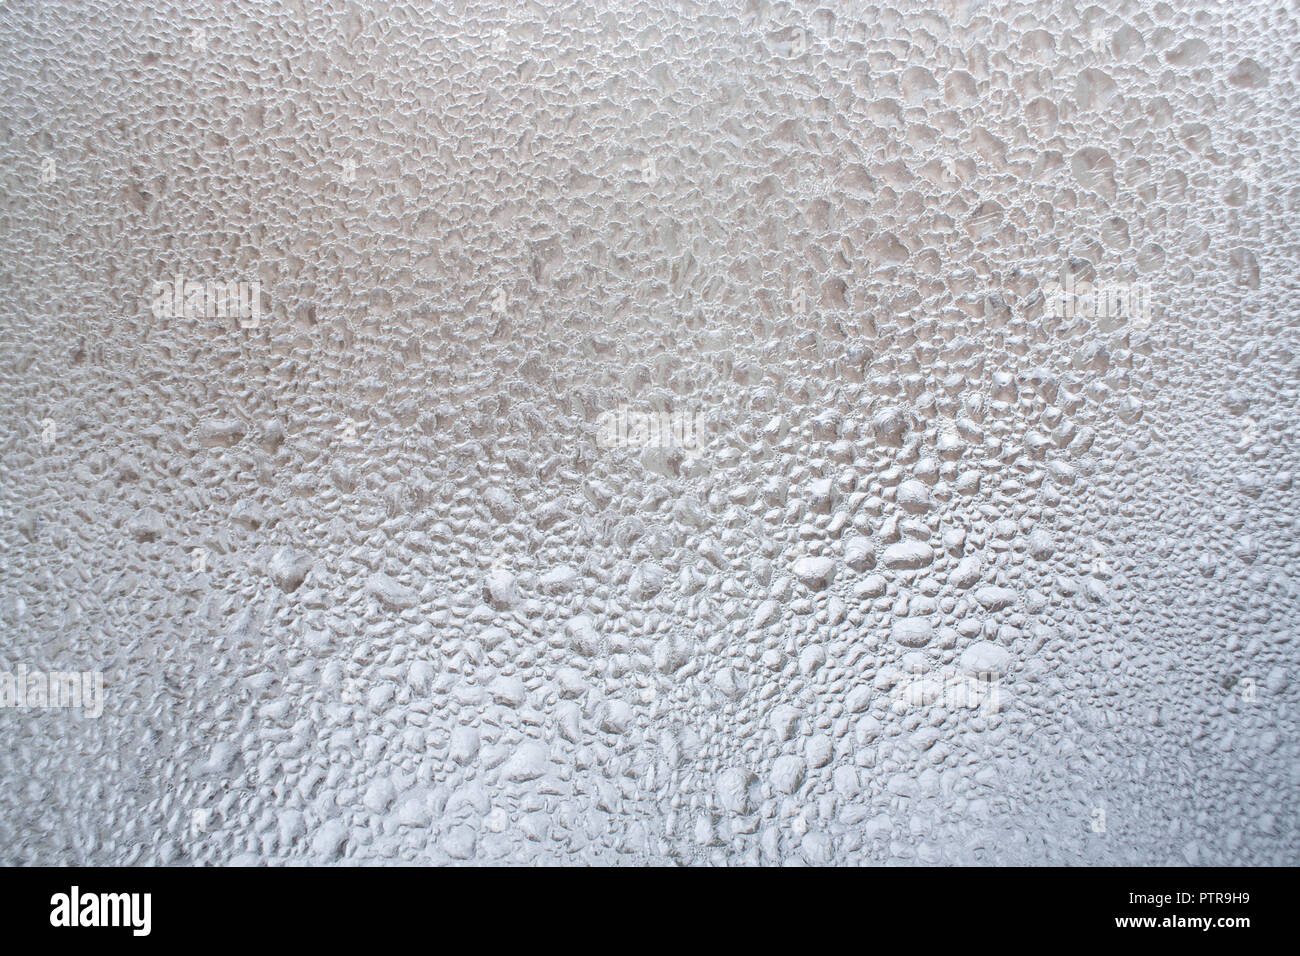 Grande concentration de gouttelettes d'eau sur la fenêtre d'hiver comme arrière-plan. Banque D'Images